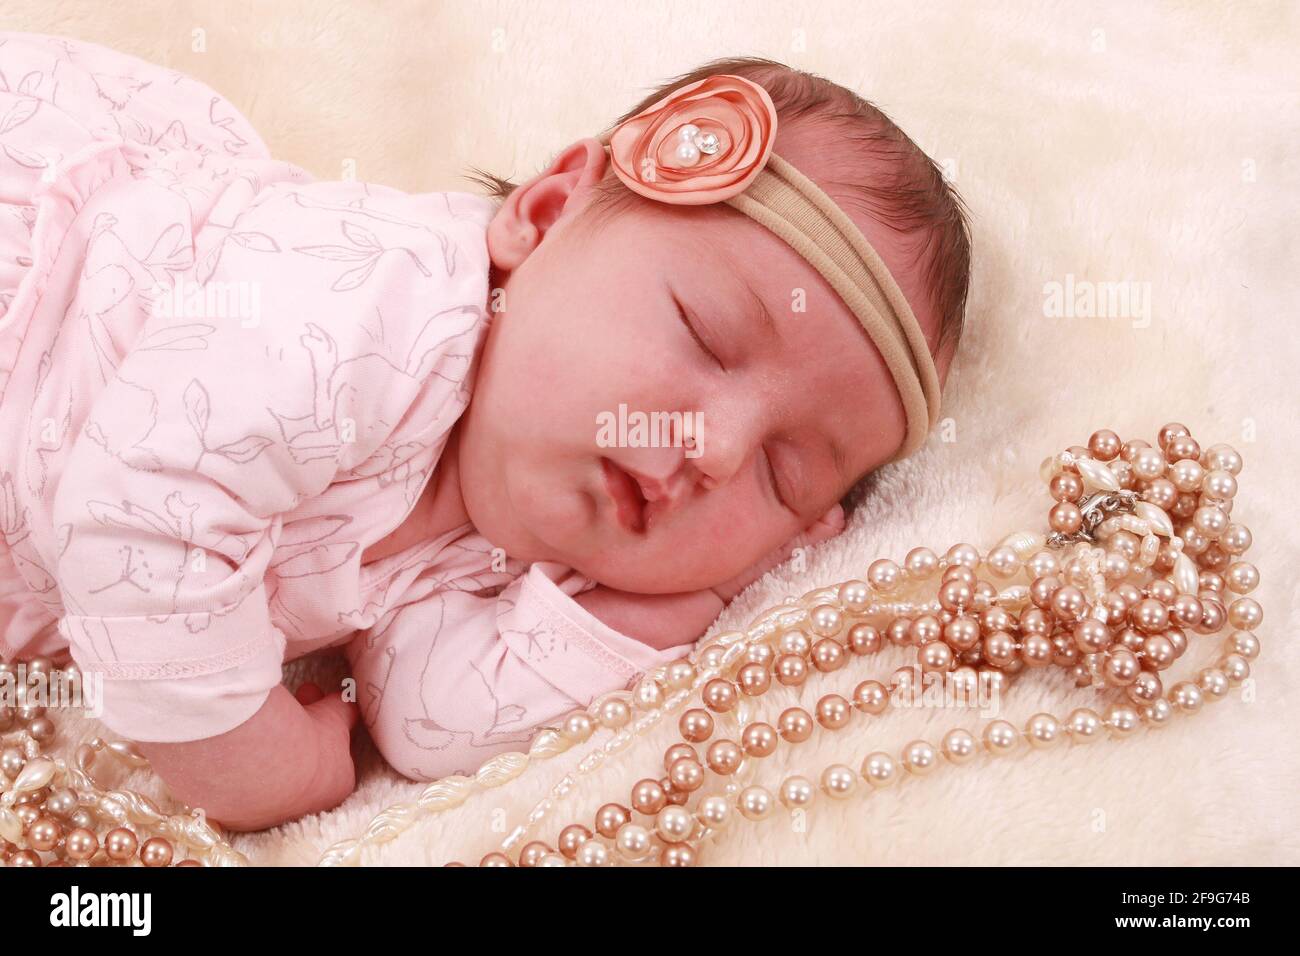 beautiful baby girl, new born baby Stock Photo